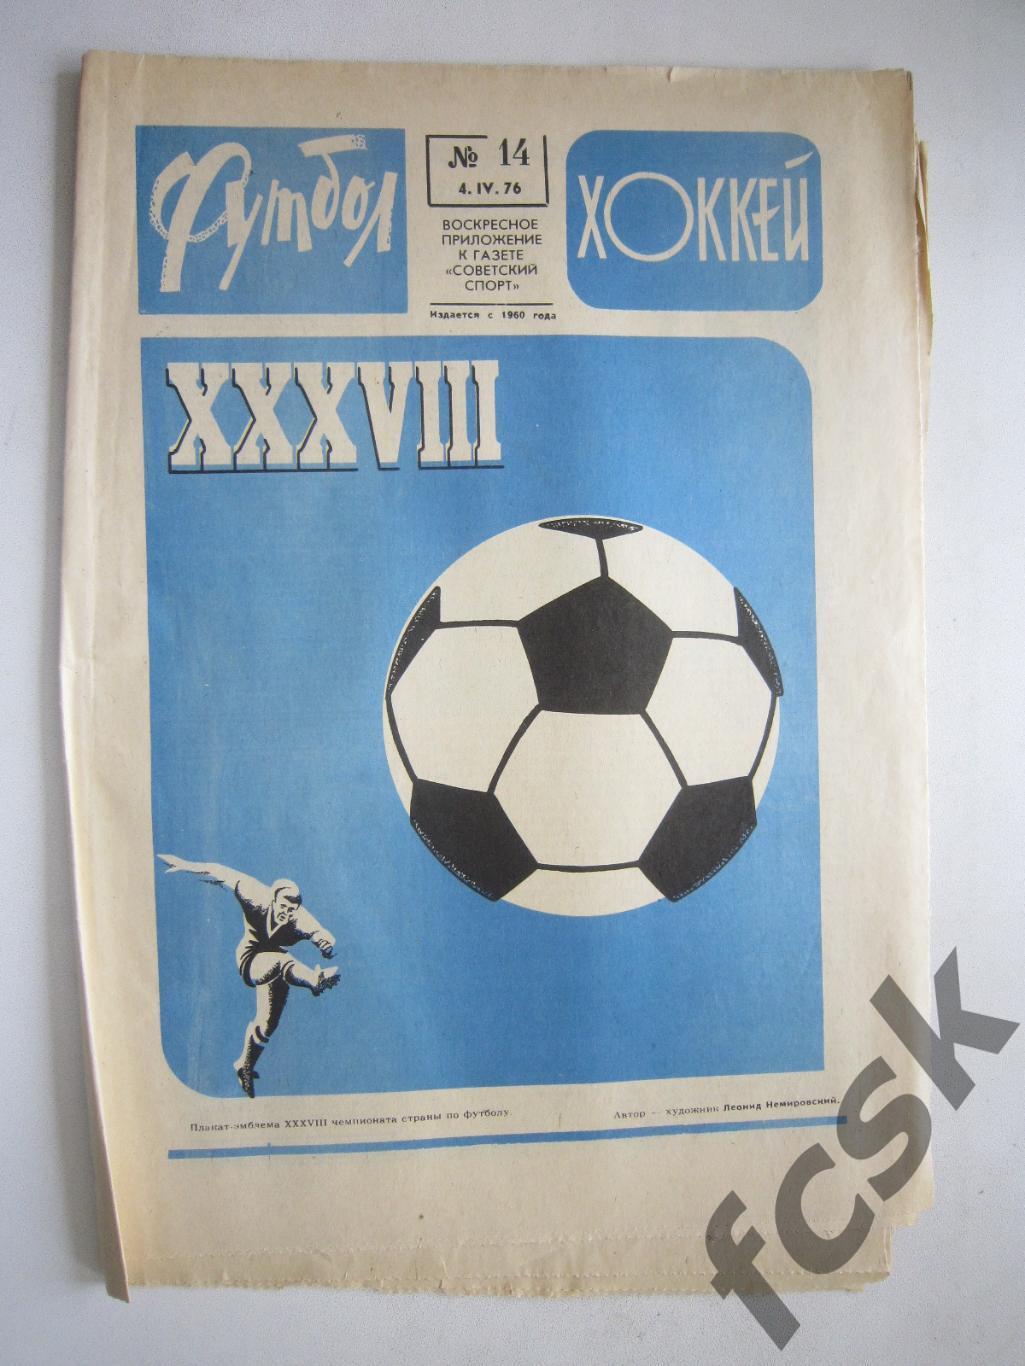 Еженедельник Футбол-Хоккей 1976 № 14 Московская правда (АВ-1)